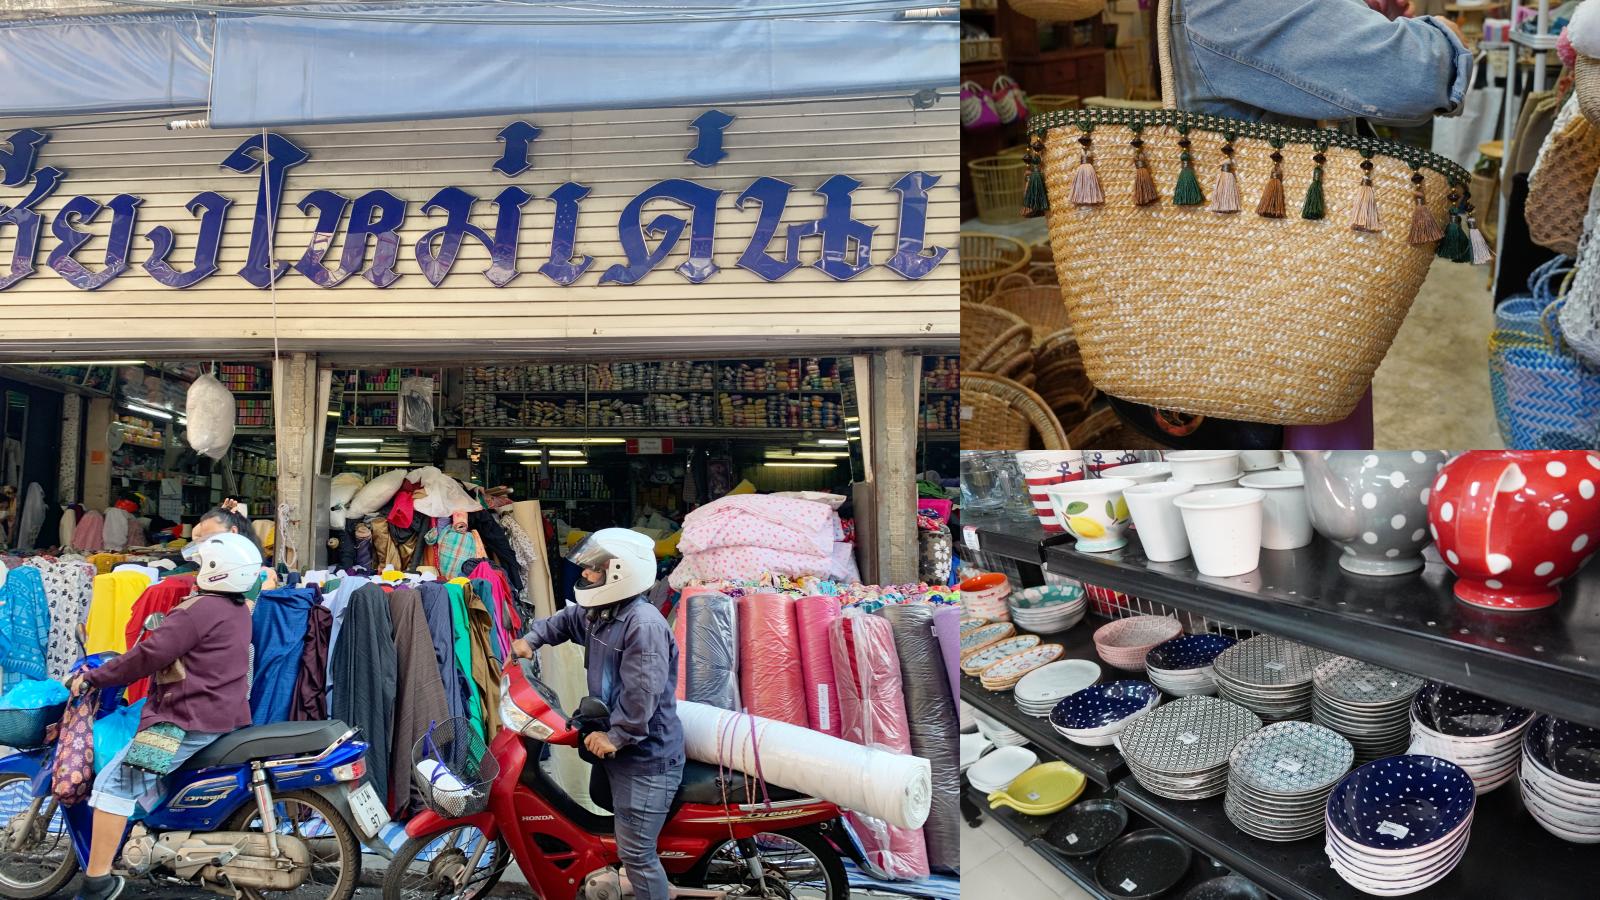 【清邁市場】在地人推薦「瓦洛洛市場」好逛又好買。連曼谷都買不到的零食伴手禮、質感包包有夠便宜 @凱的日本食尚日記